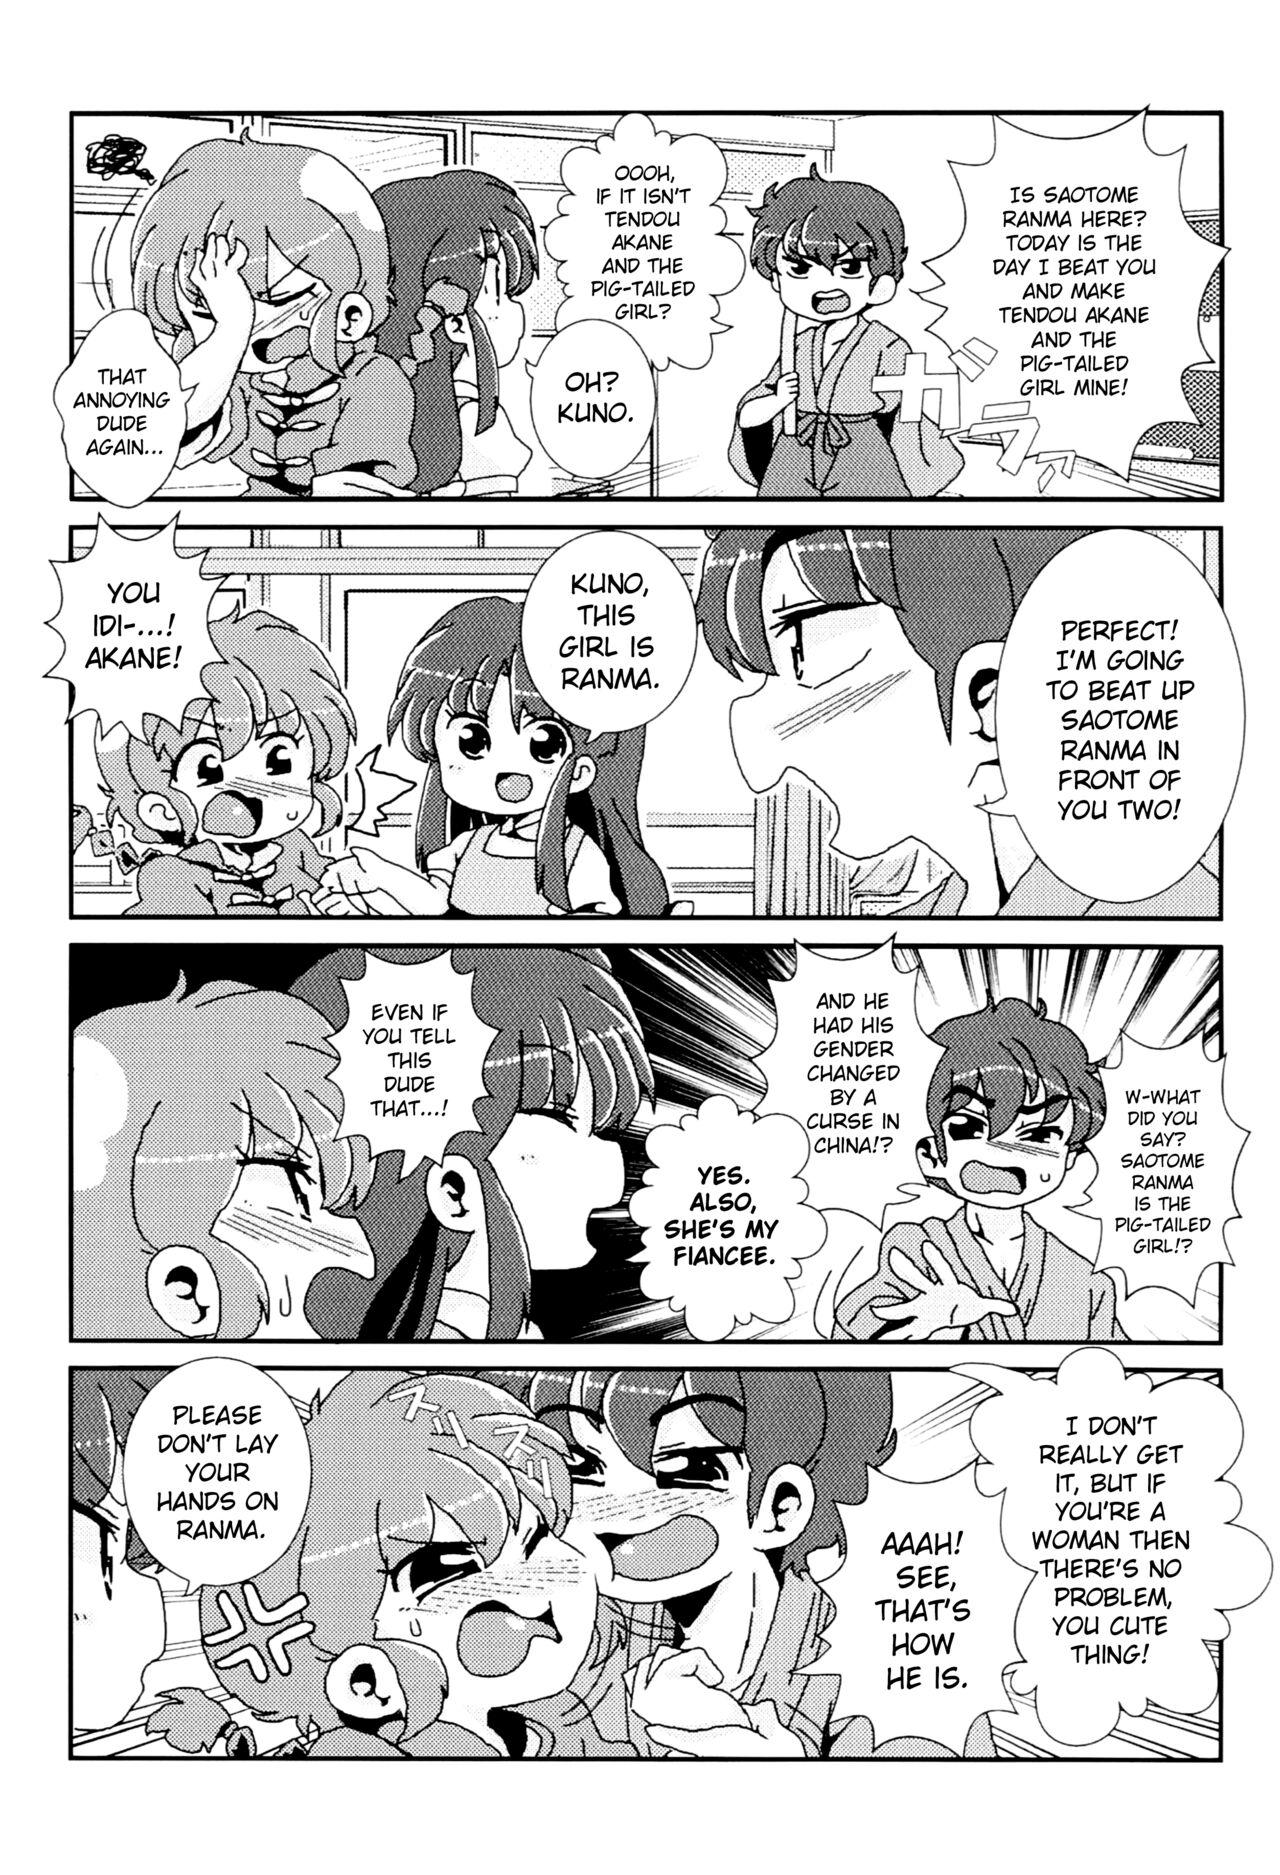 18yo Akane Ranma ♀ is a chilling matter - Ranma 12 Sub - Page 10